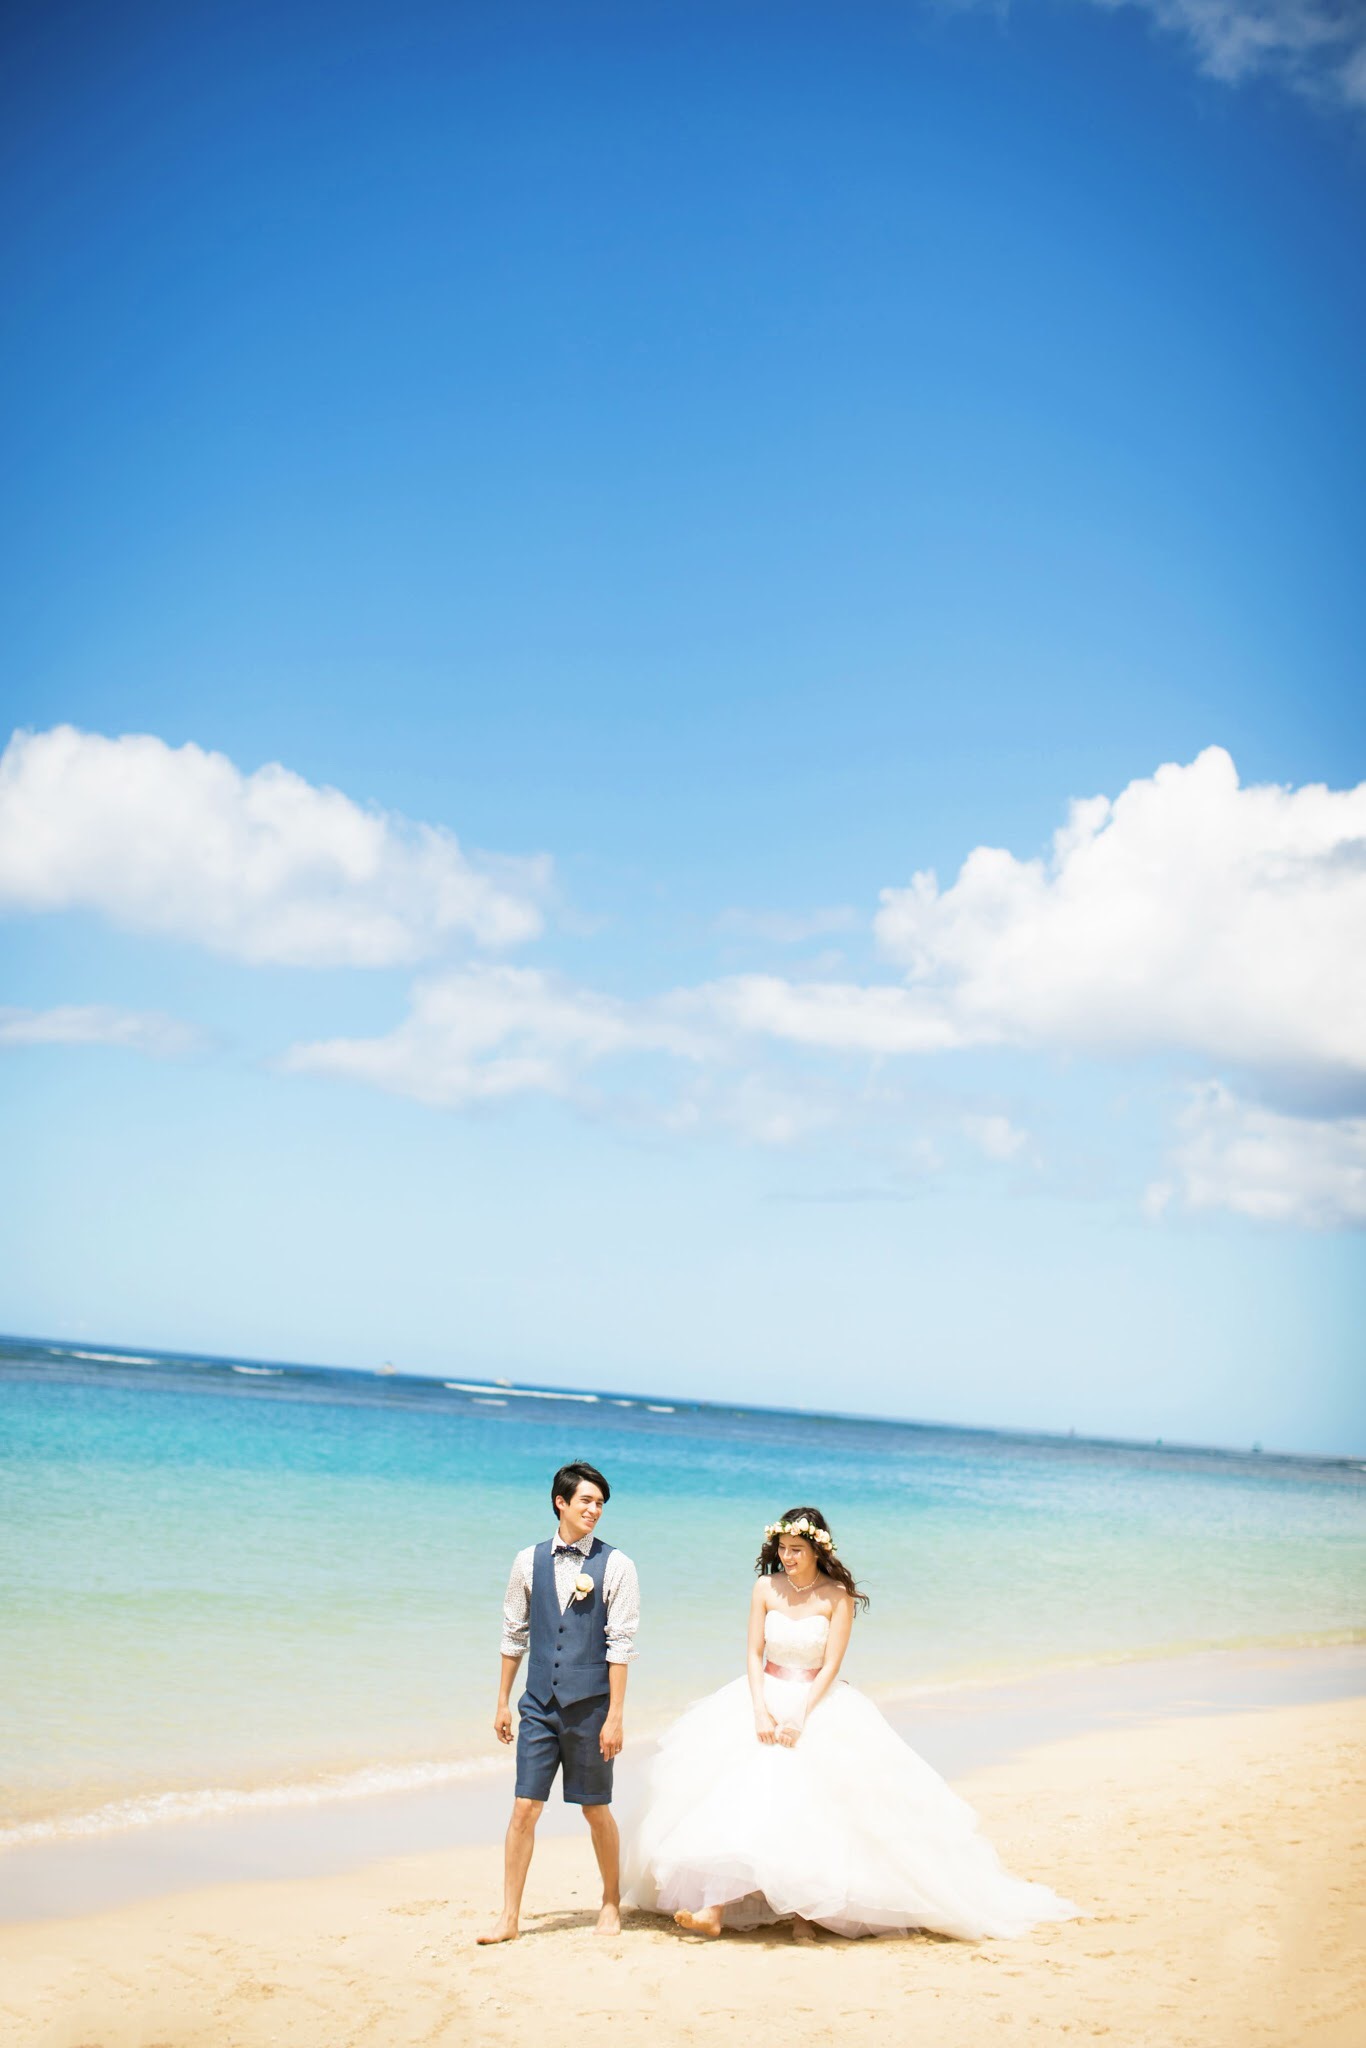 ハワイといえばやっぱりビーチ 参考にできるオシャレ写真集 Blog クチュールナオコ Couture Naoco